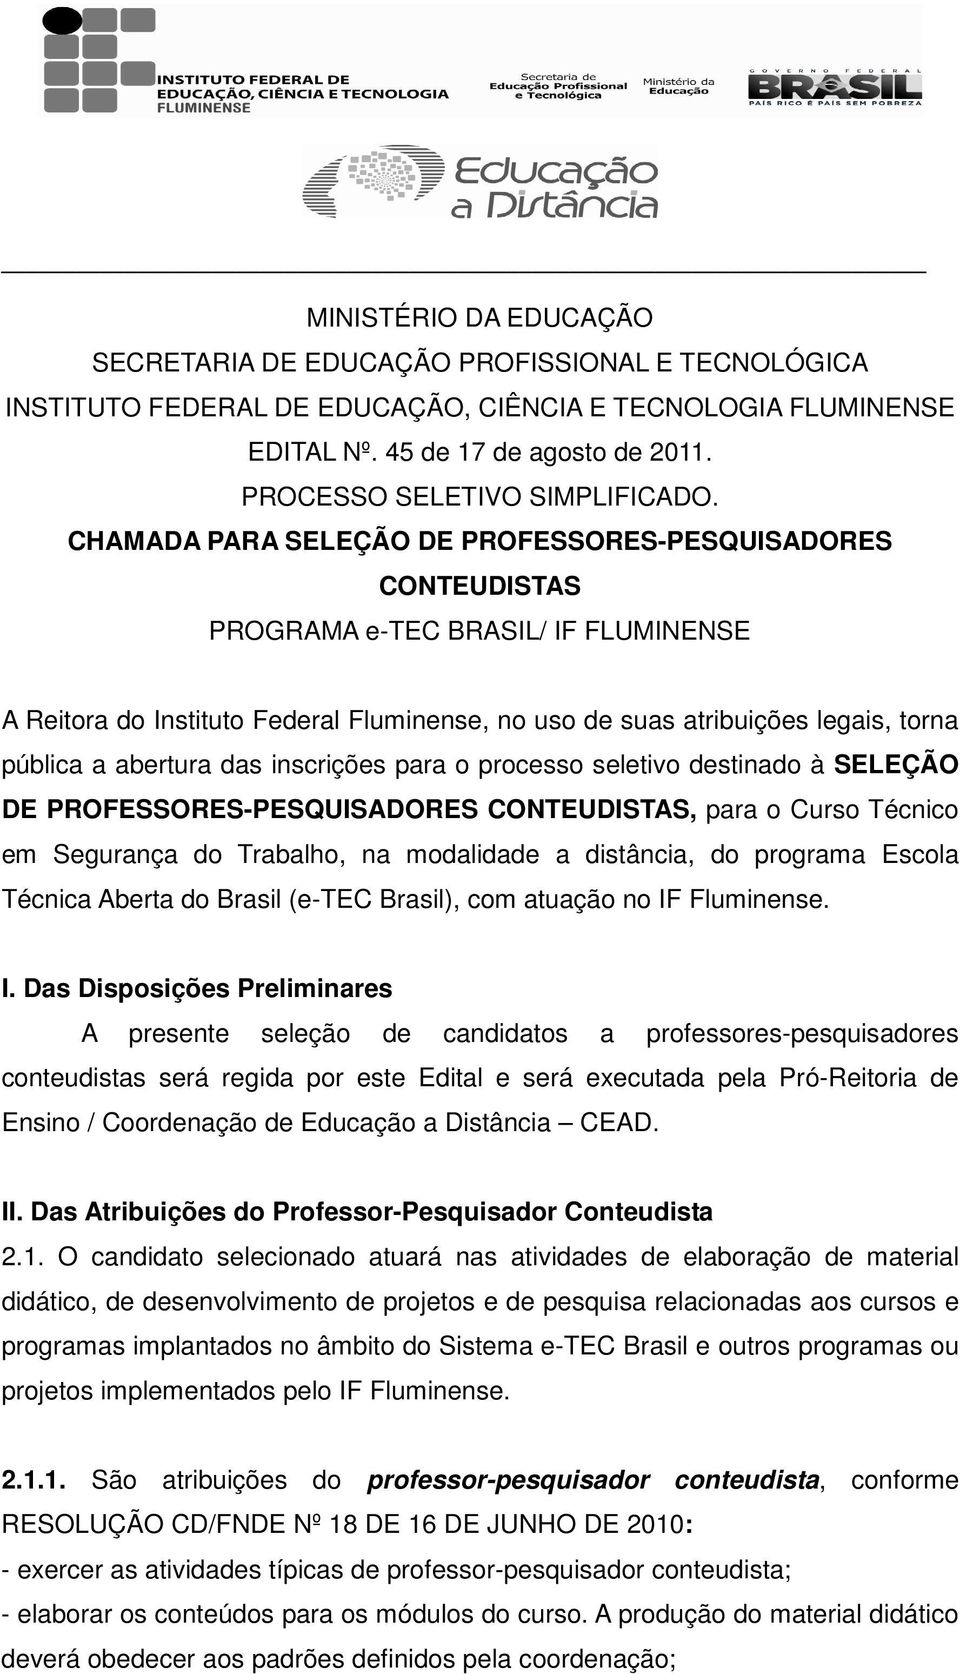 CHAMADA PARA SELEÇÃO DE PROFESSORES-PESQUISADORES CONTEUDISTAS PROGRAMA e-tec BRASIL/ IF FLUMINENSE A Reitora do Instituto Federal Fluminense, no uso de suas atribuições legais, torna pública a